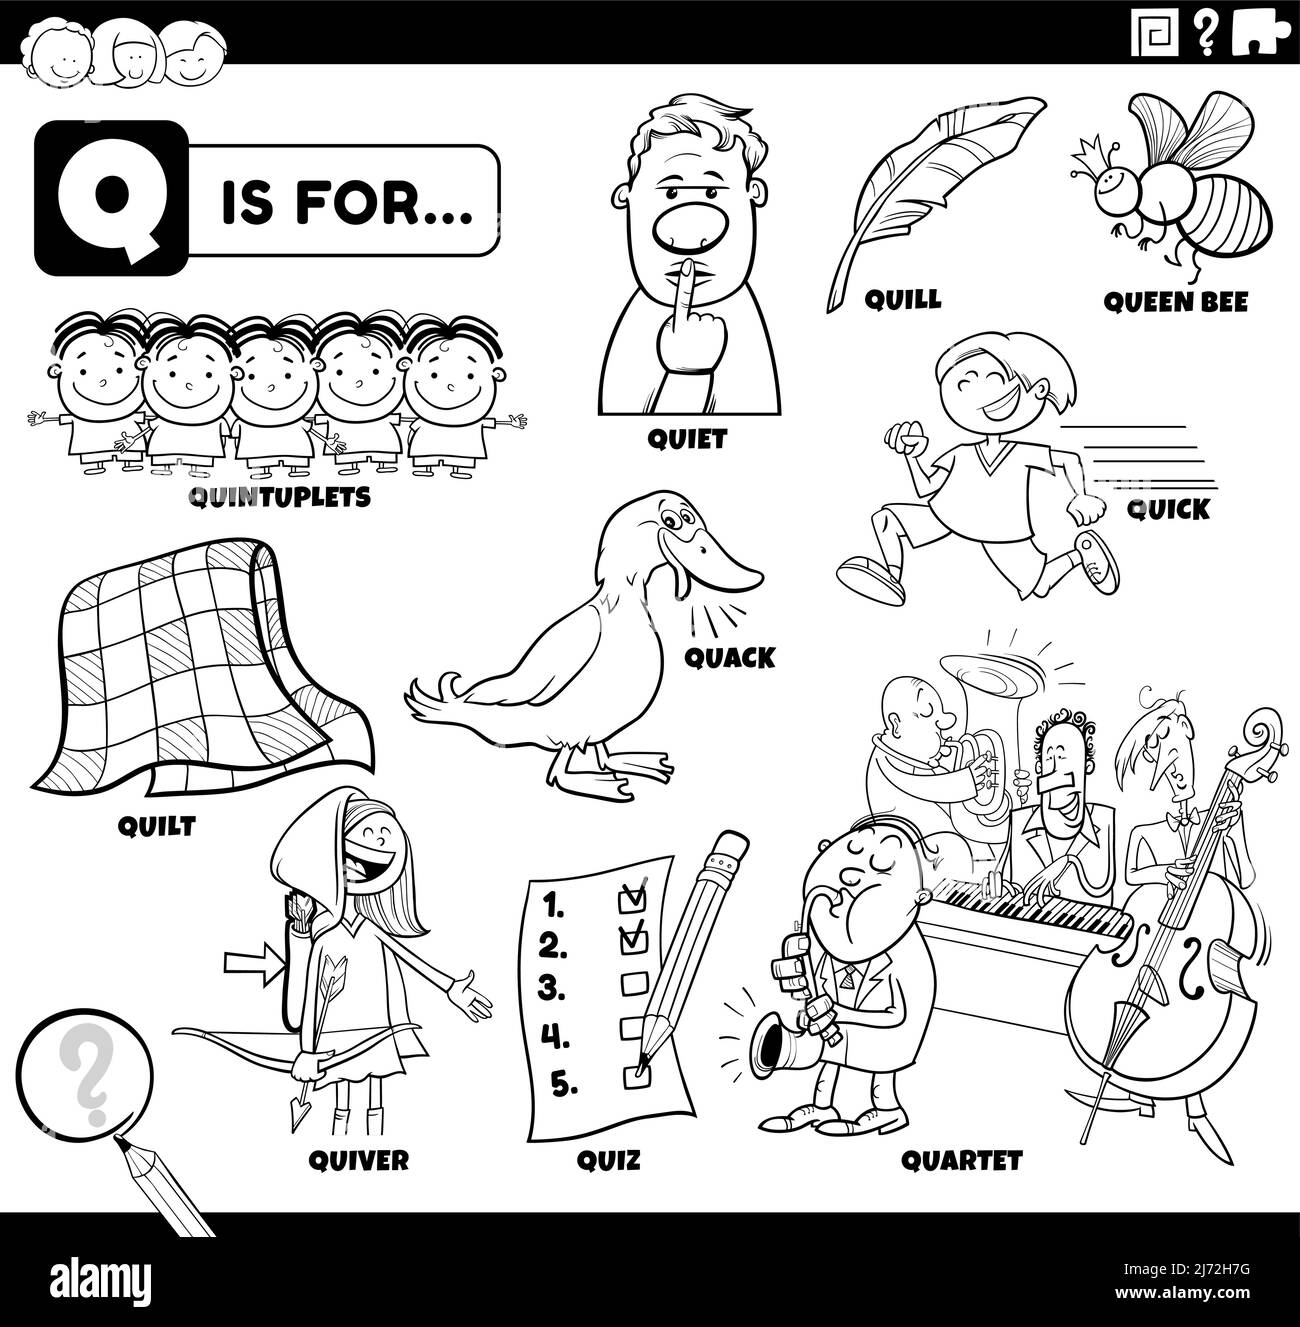 Schwarz-Weiß-Bildungs-Cartoon-Illustration für Kinder mit Comic-Figuren und Objekte für Buchstabe Q Malbuch Seite gesetzt Stock Vektor